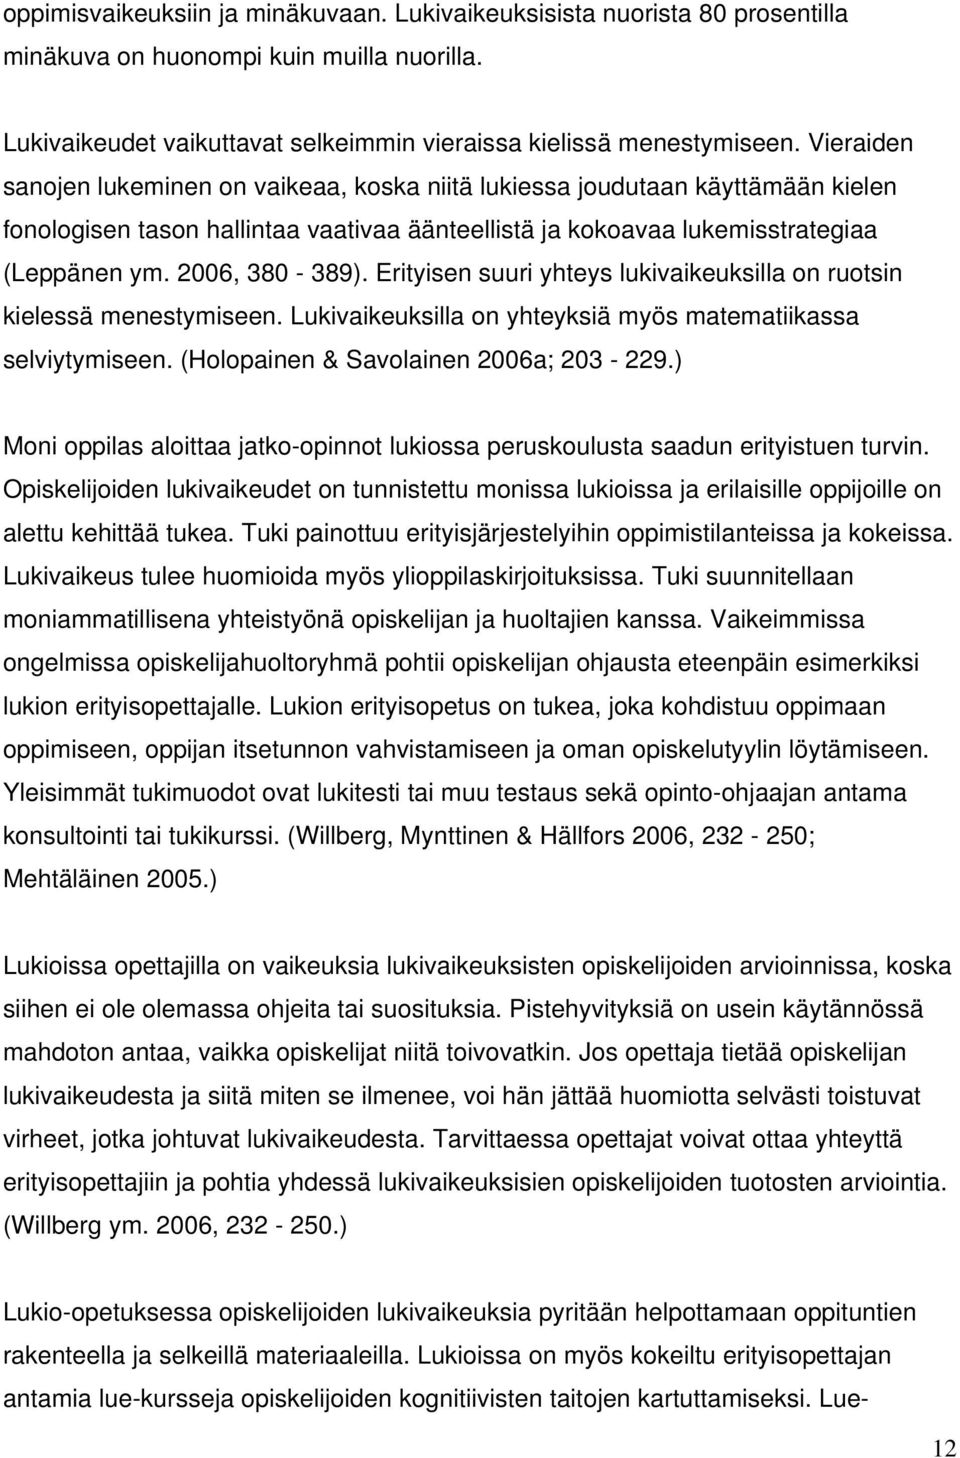 Erityisen suuri yhteys lukivaikeuksilla on ruotsin kielessä menestymiseen. Lukivaikeuksilla on yhteyksiä myös matematiikassa selviytymiseen. (Holopainen & Savolainen 2006a; 203-229.